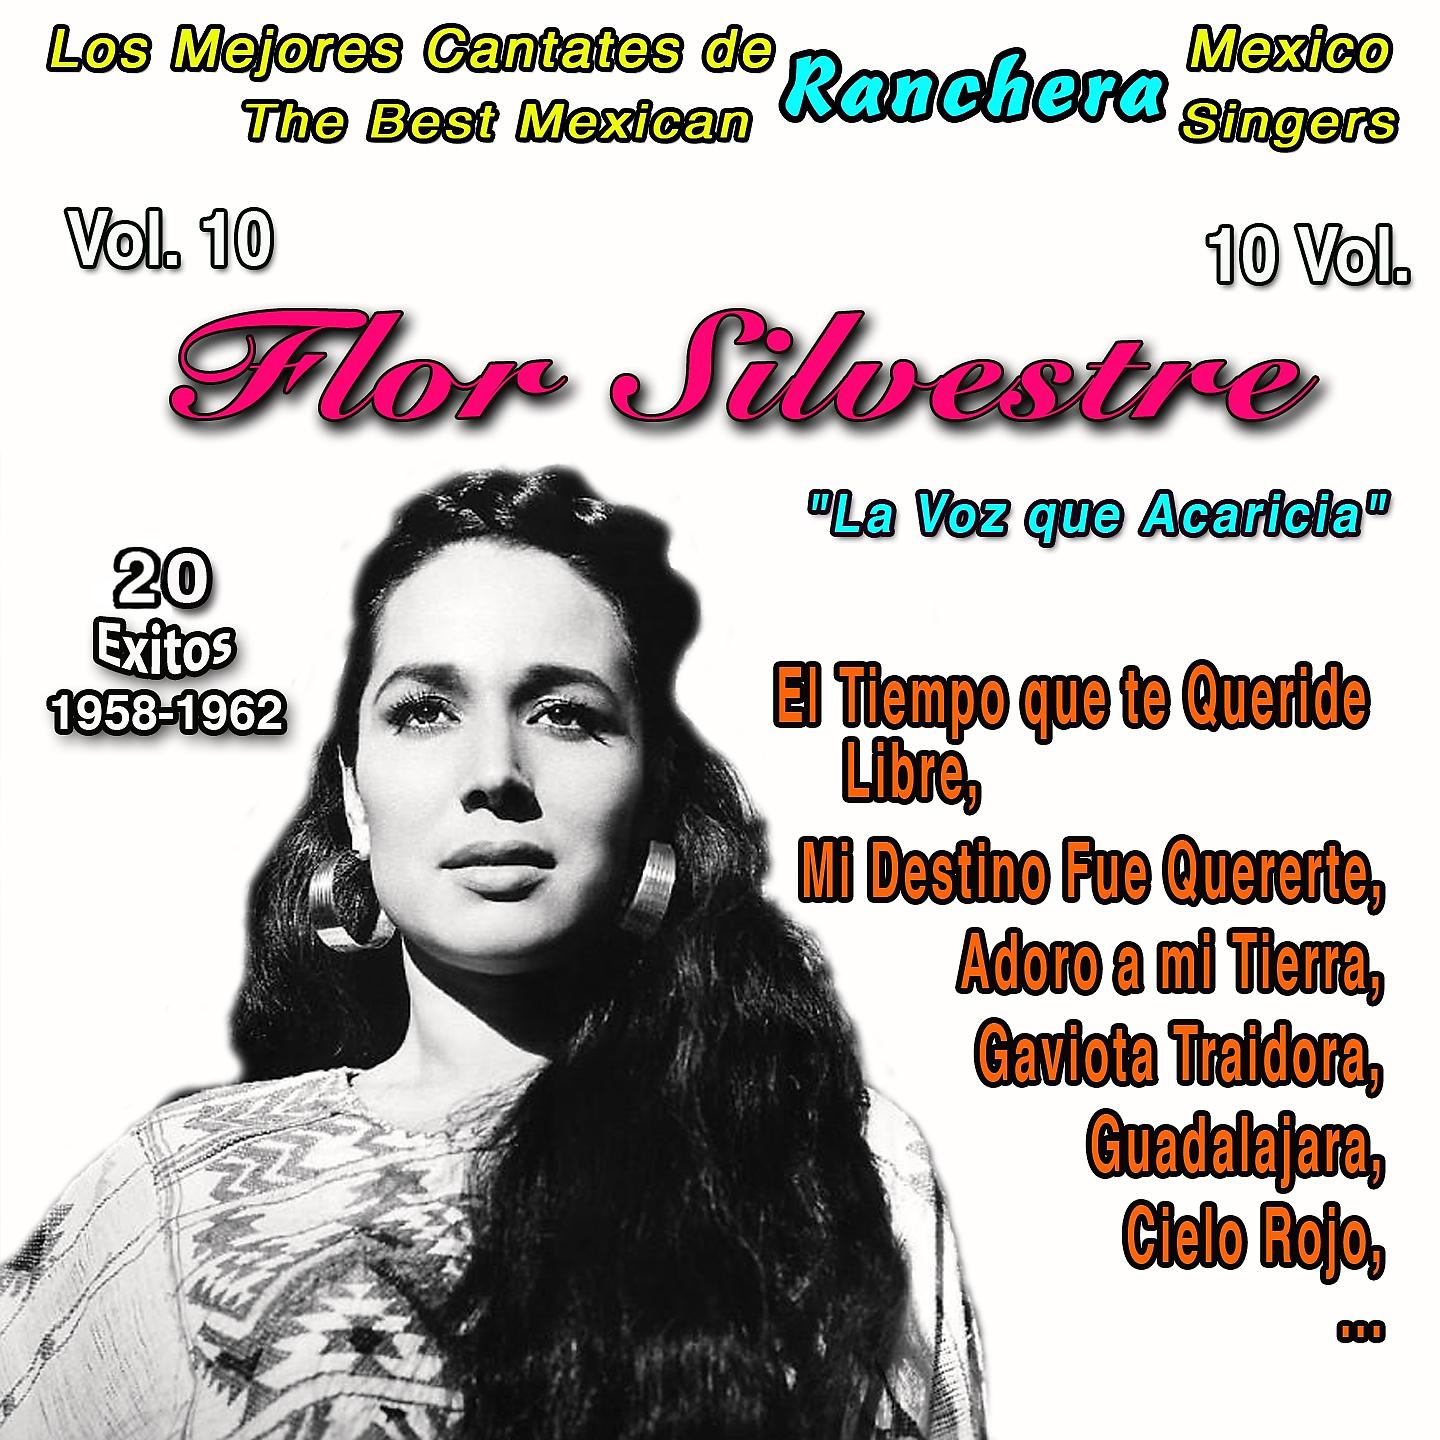 Постер альбома Los Mejores Cantates de Musica Ranchera Mexicana - Vol. 10 - Flor Silvestre: "La Voz que Acaricia